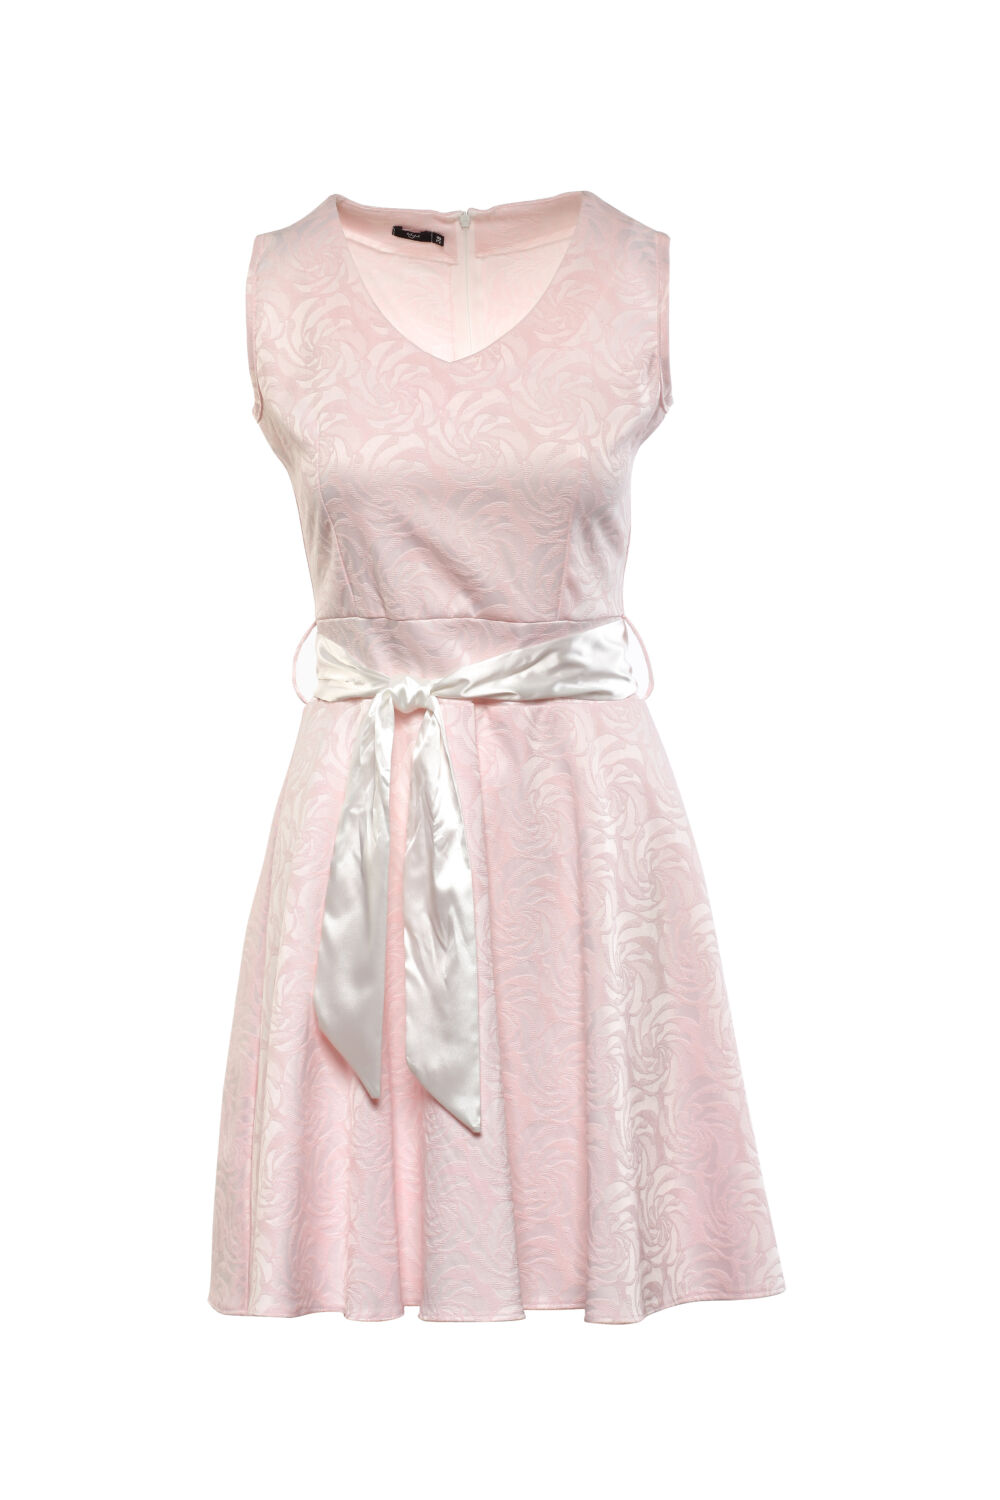 Rózsaszín, anyagában mintás midi ruha, széles fehér masnival